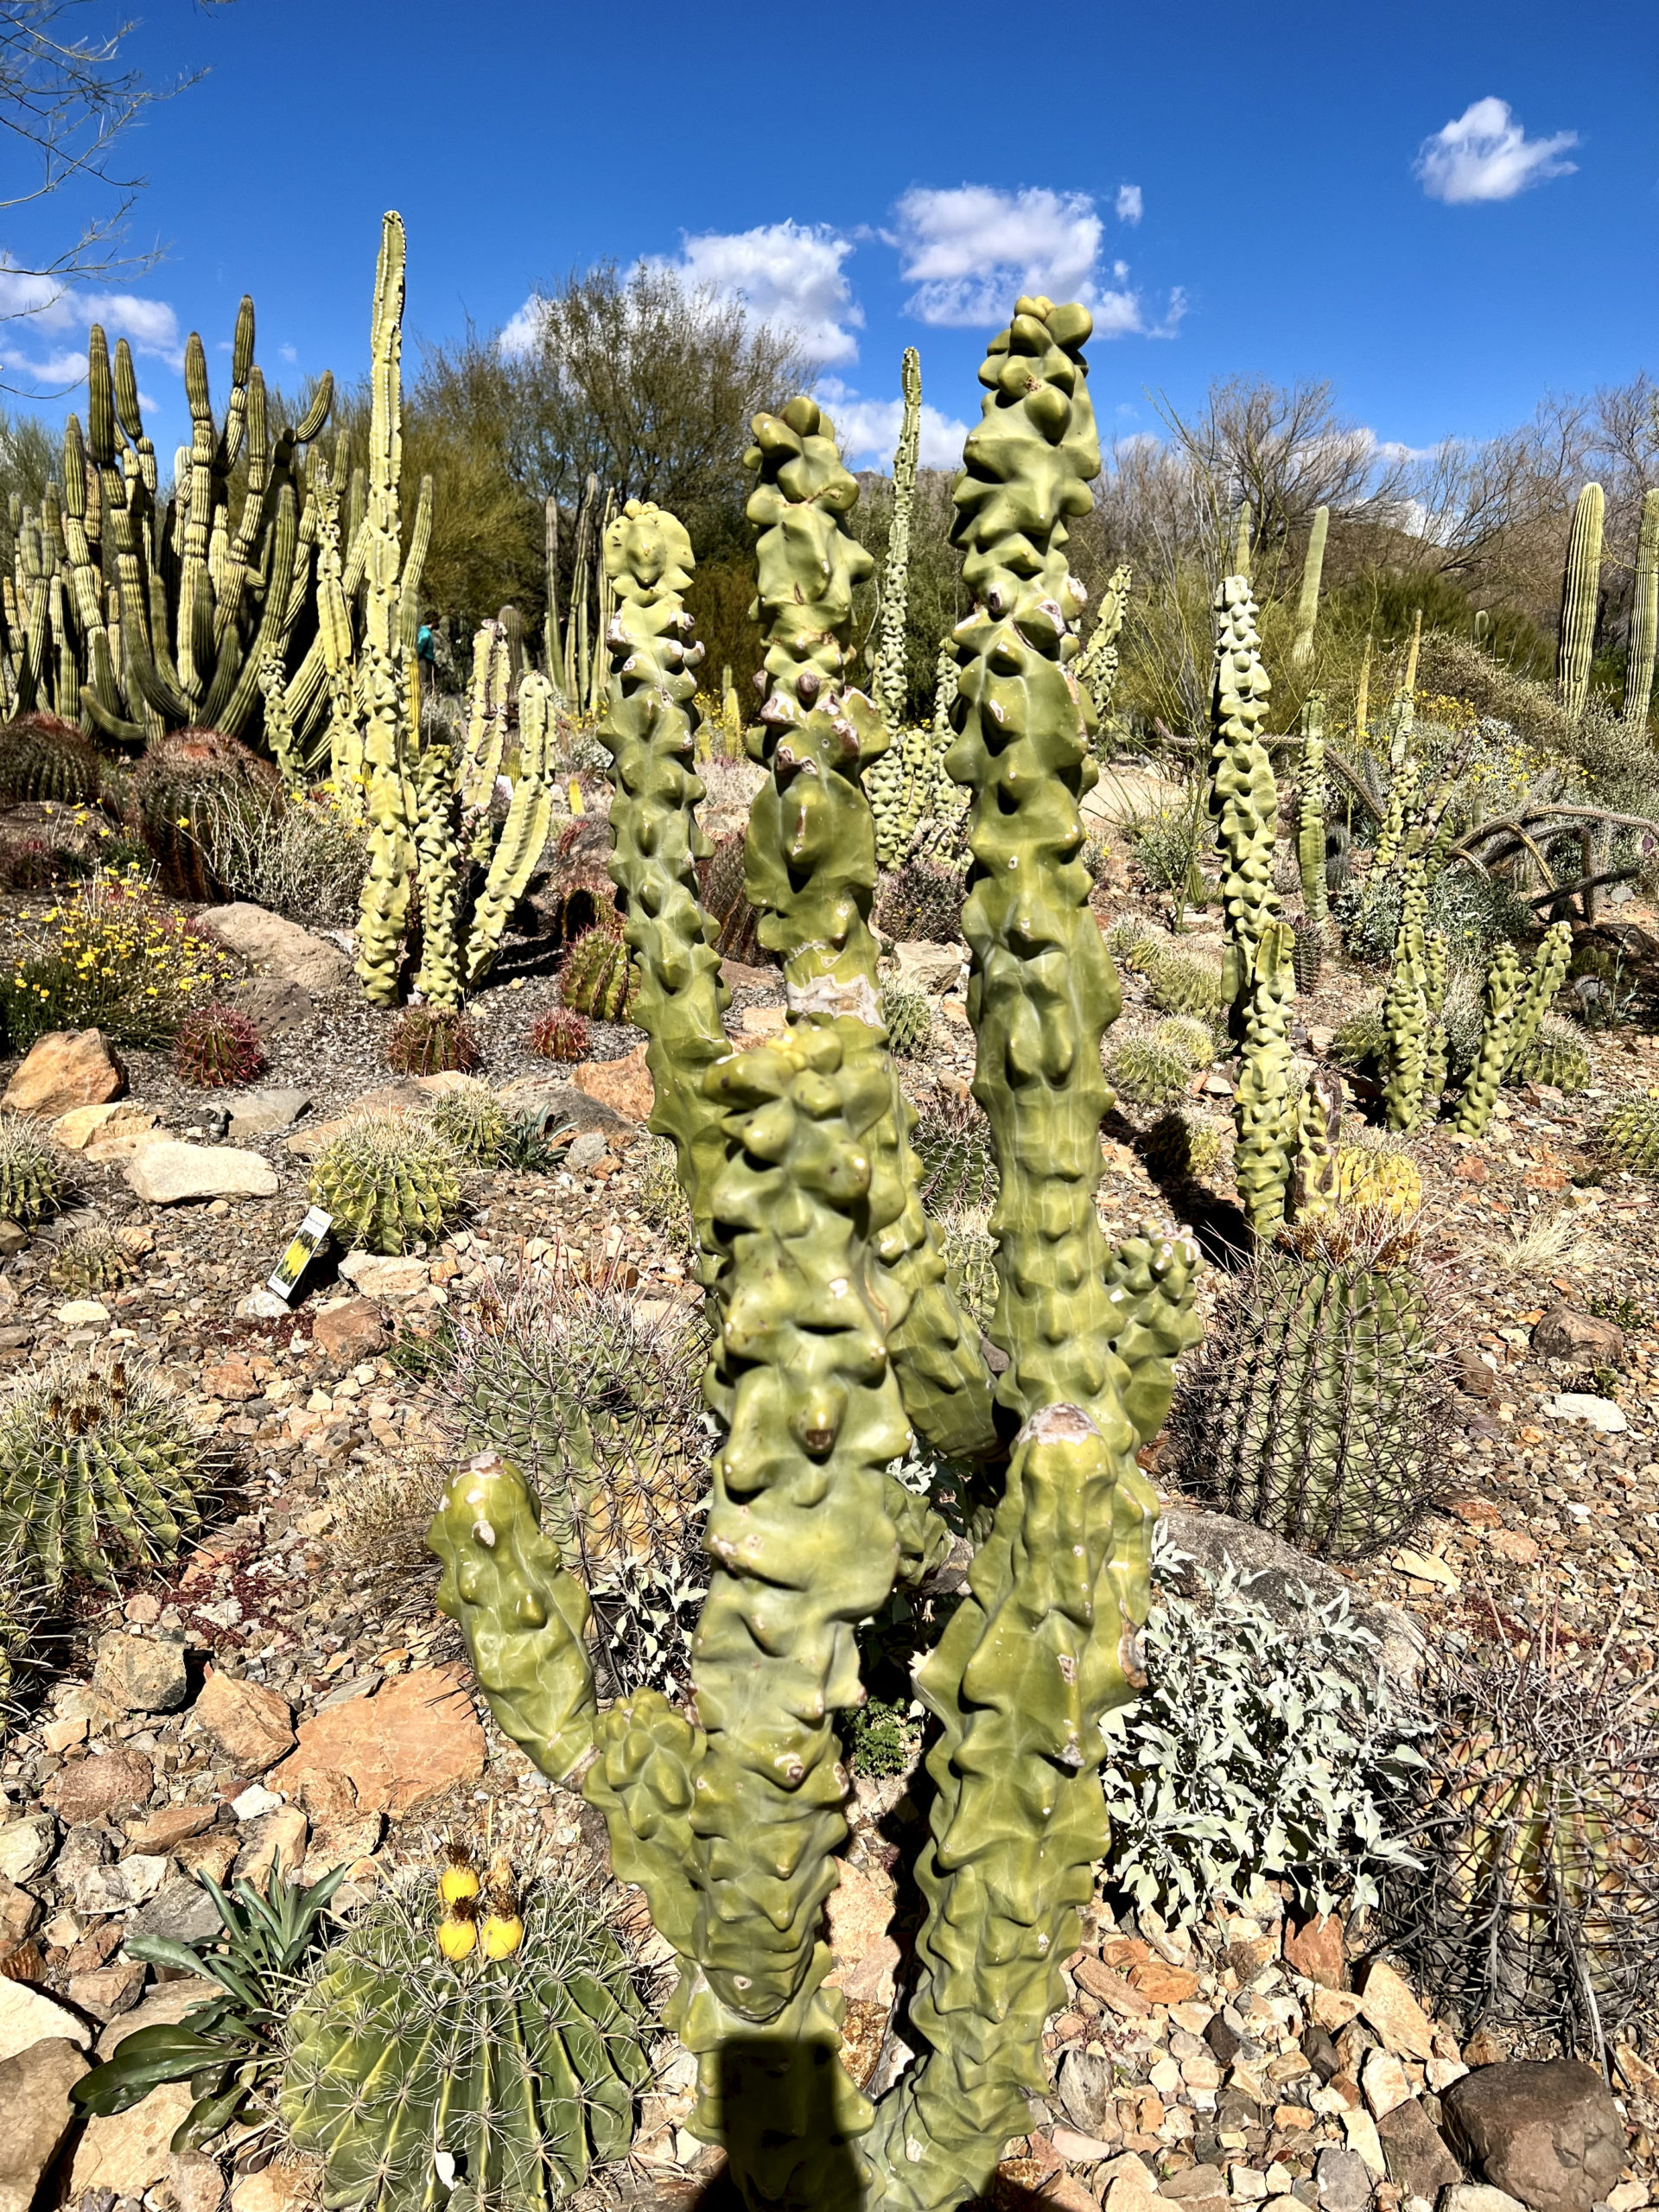 oddly shaped cactus